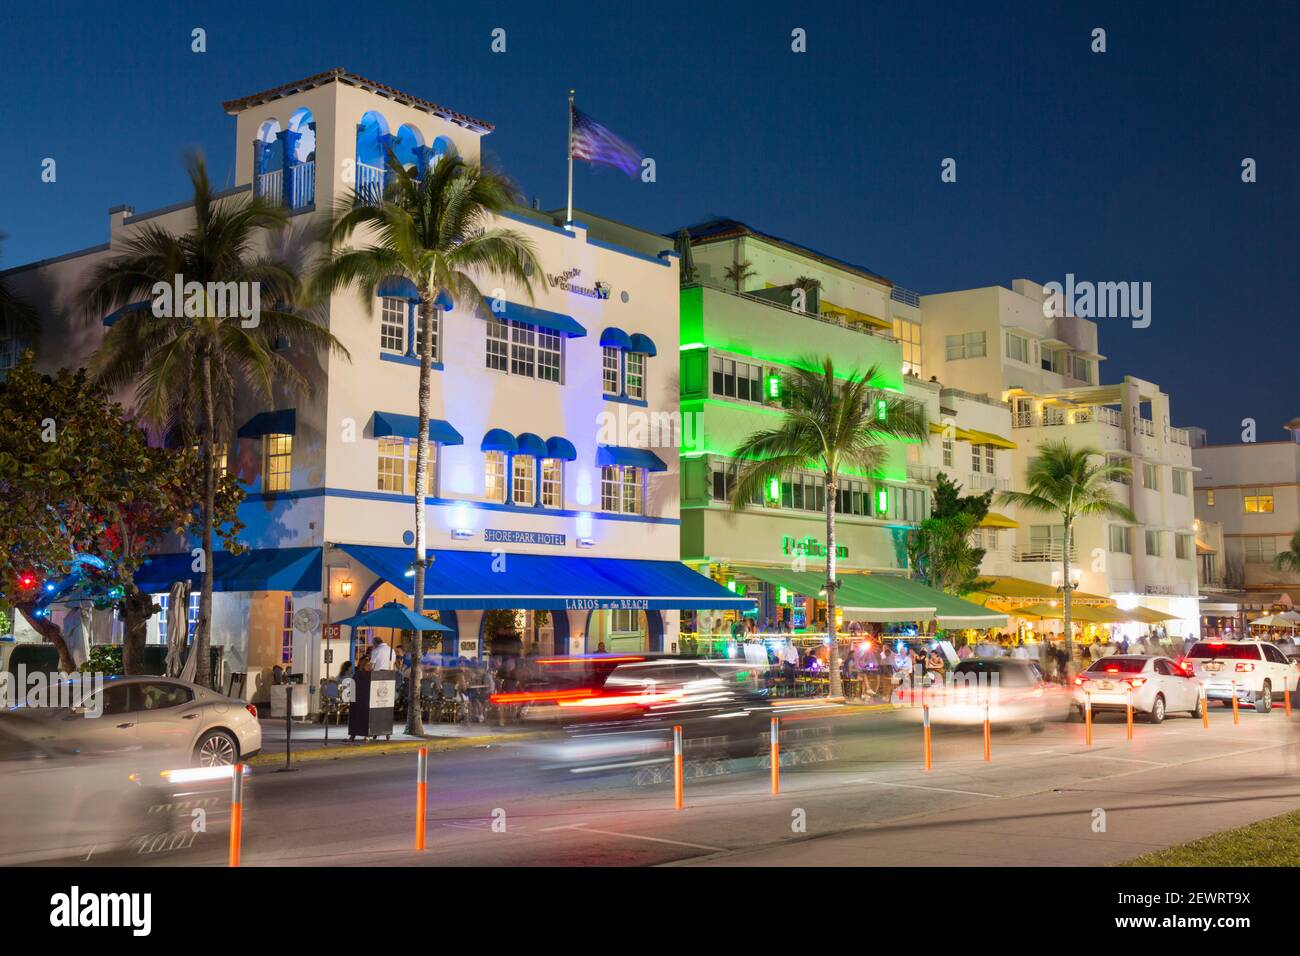 Farbenfrohe Hotelfassaden, die bei Nacht beleuchtet werden, Ocean Drive, historisches Art déco-Viertel, South Beach, Miami Beach, Florida, USA Stockfoto